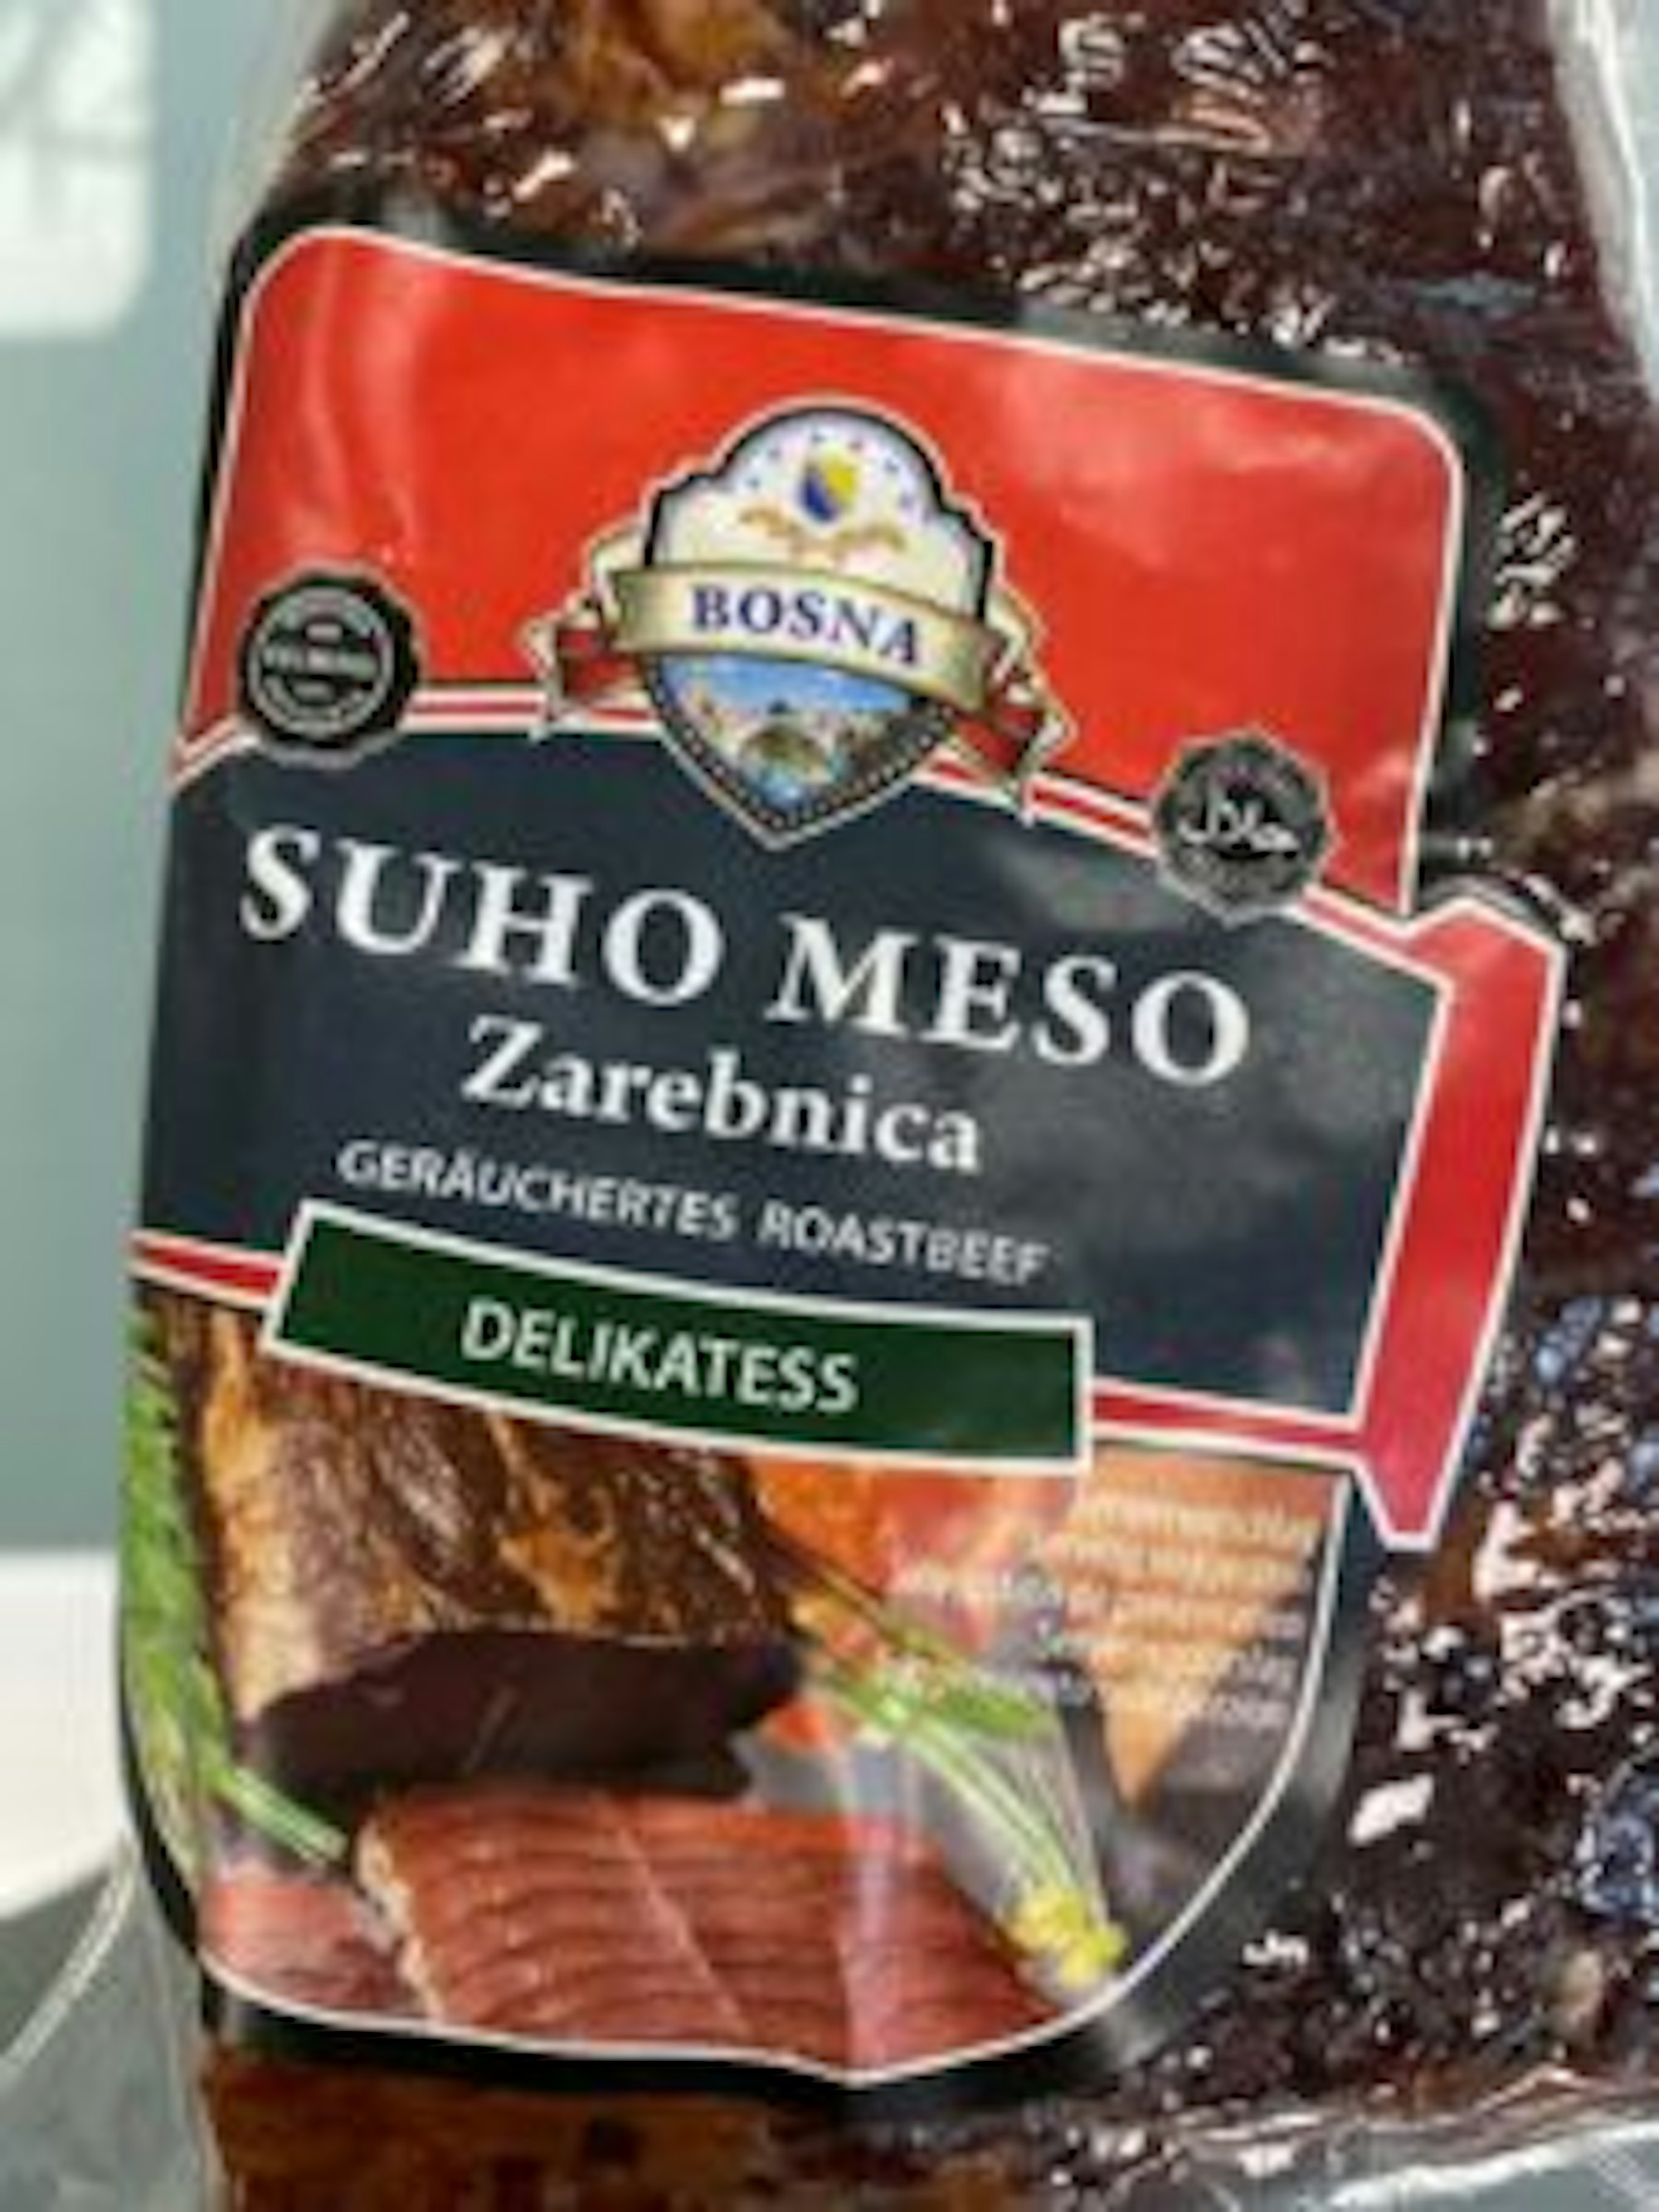 Der Hersteller Kelmendi ruft „Suho Meso Zarebnica“ geräuchertes Roastbeef zurück.